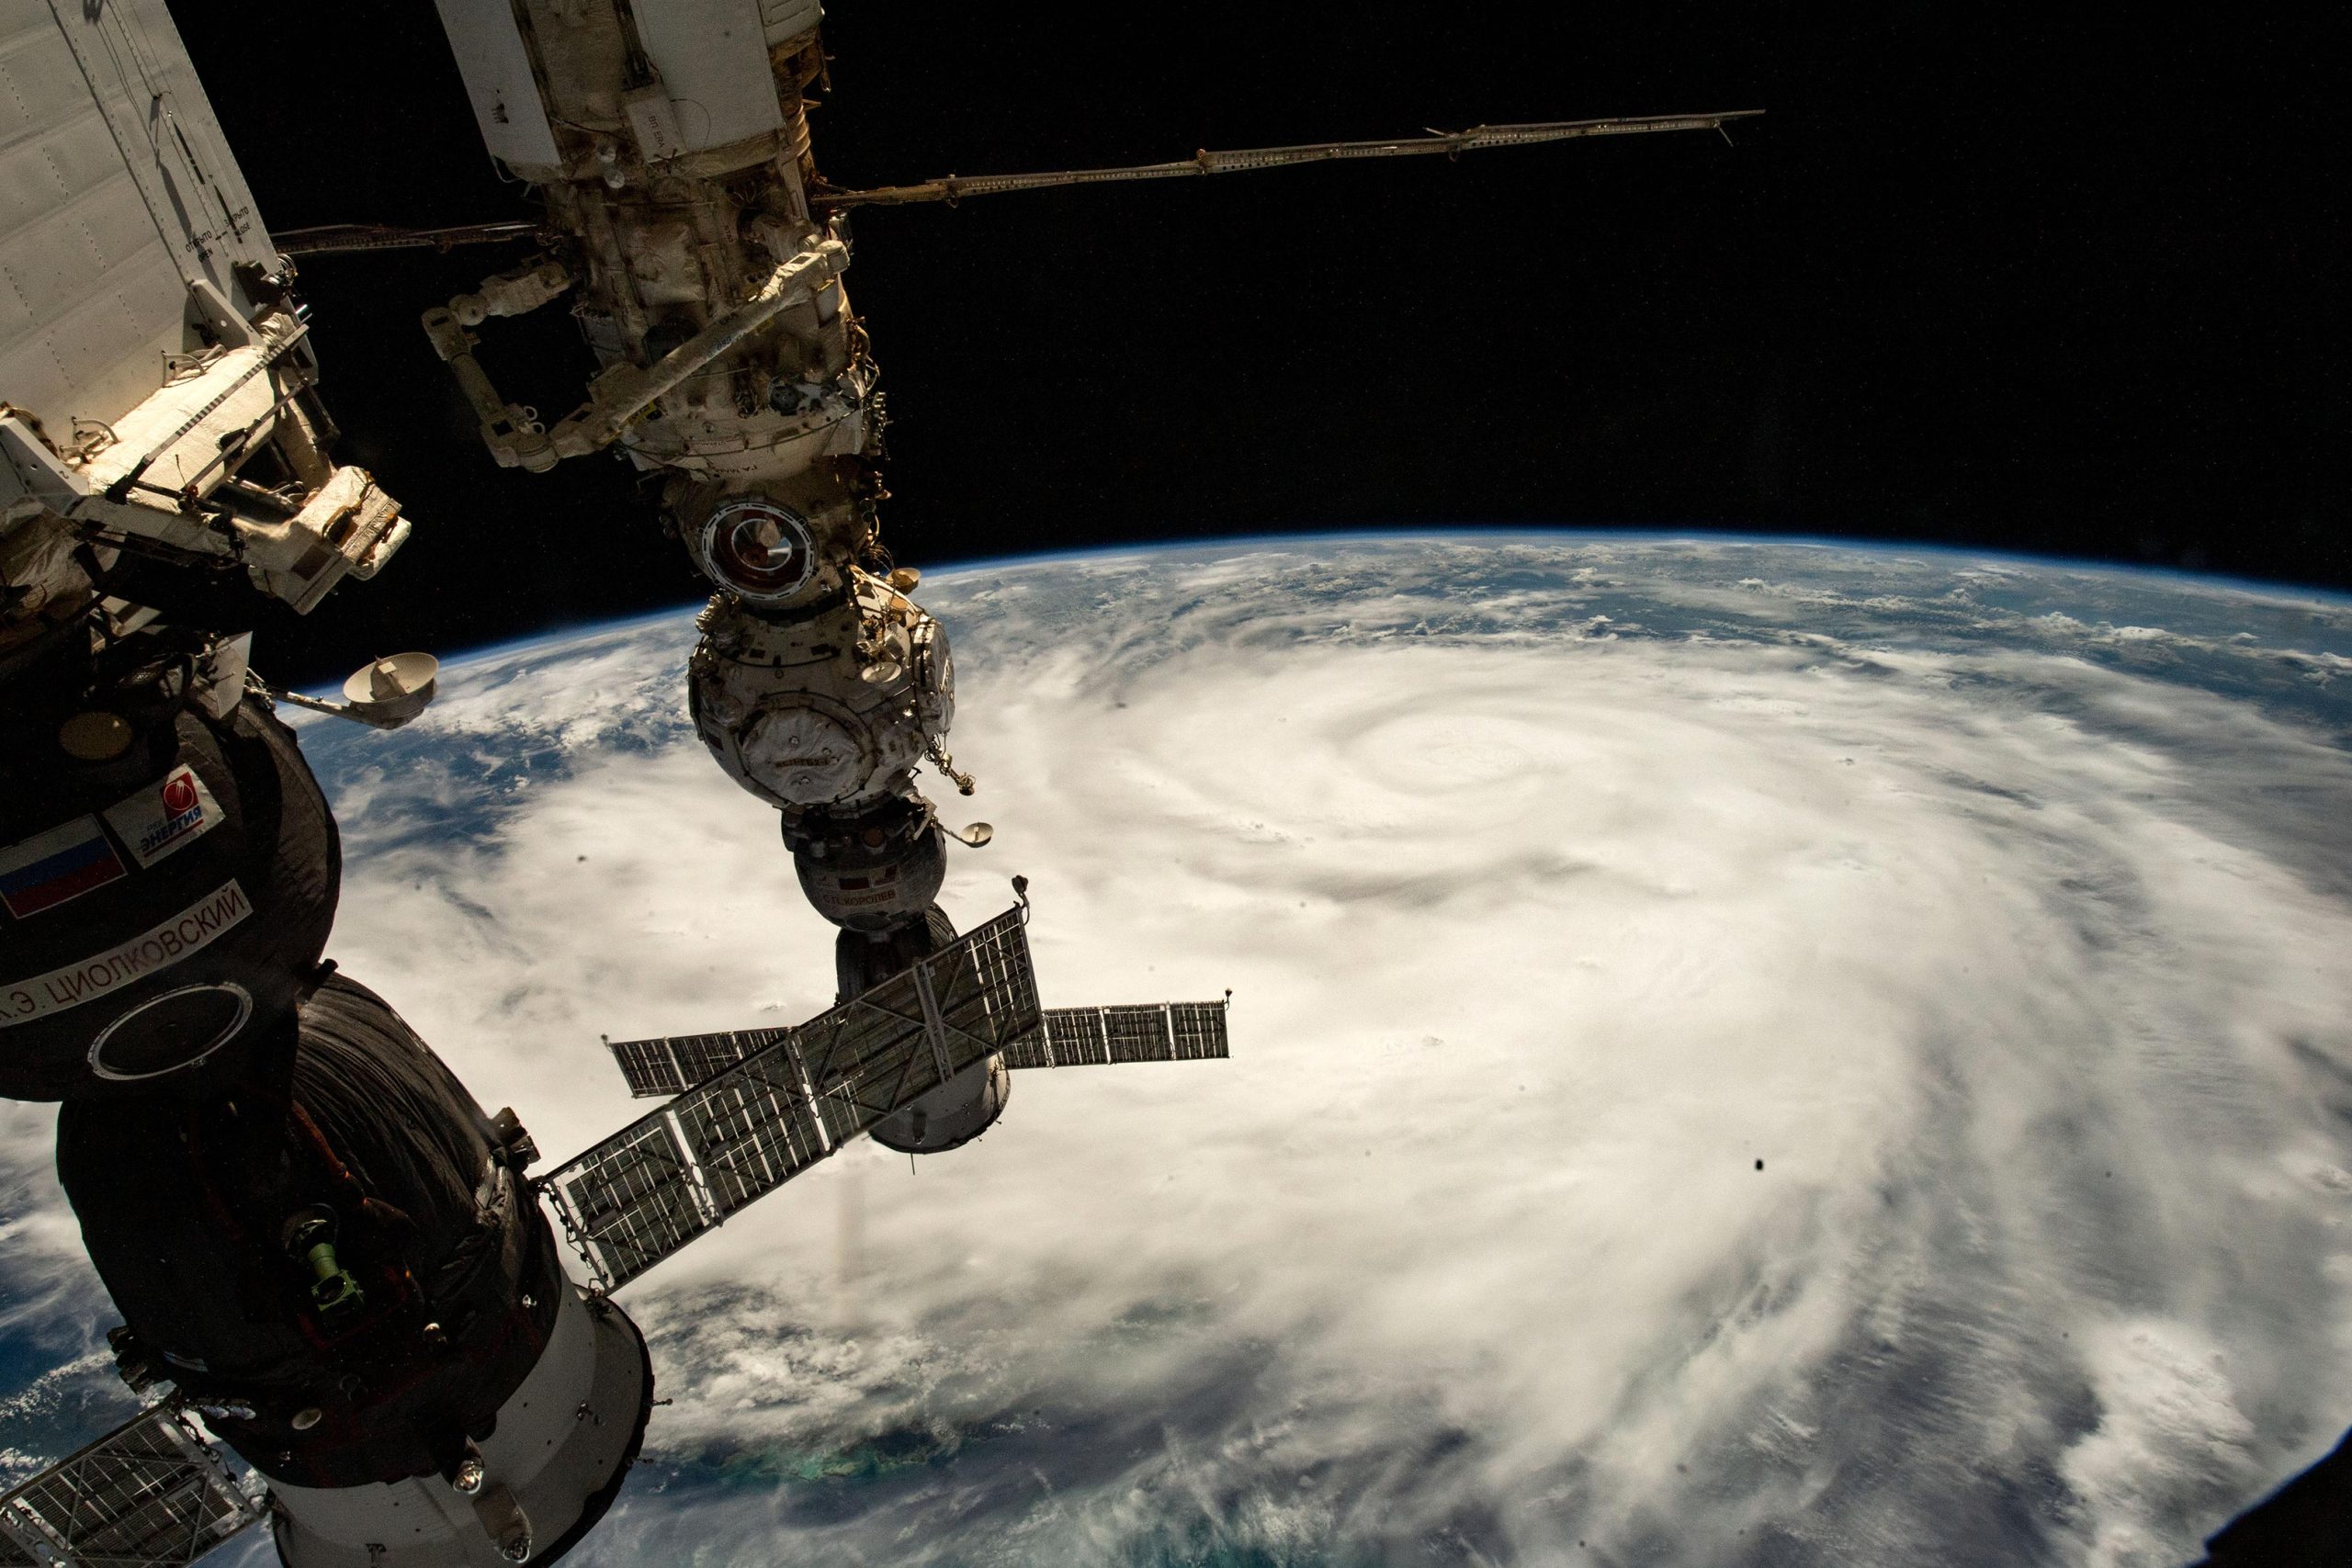 国际空间站宇航员拍摄的四级飓风“伊恩”的惊人照片